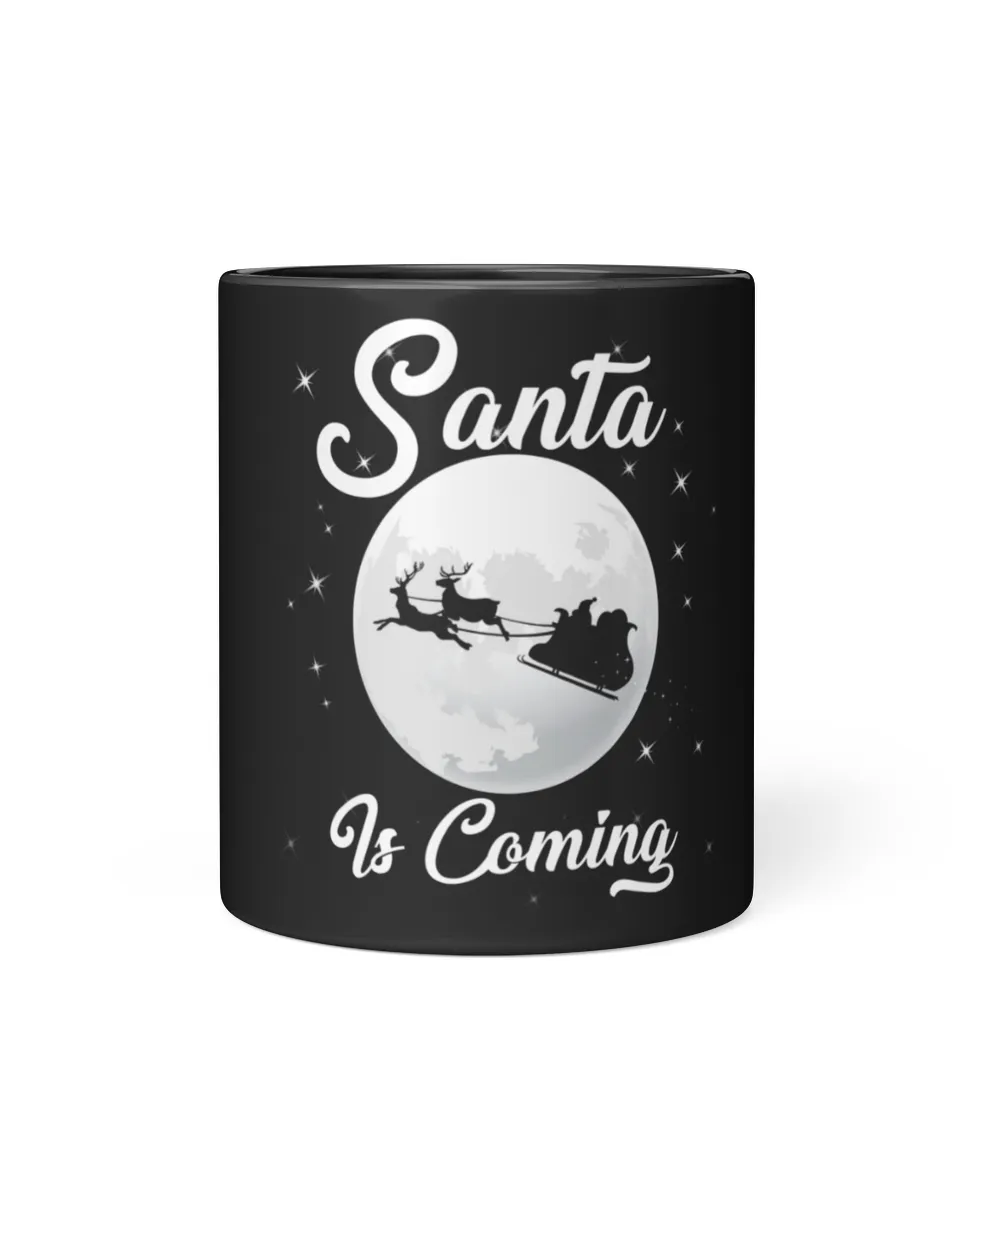 Santa Is Coming Wine Tumbler (12 oz)